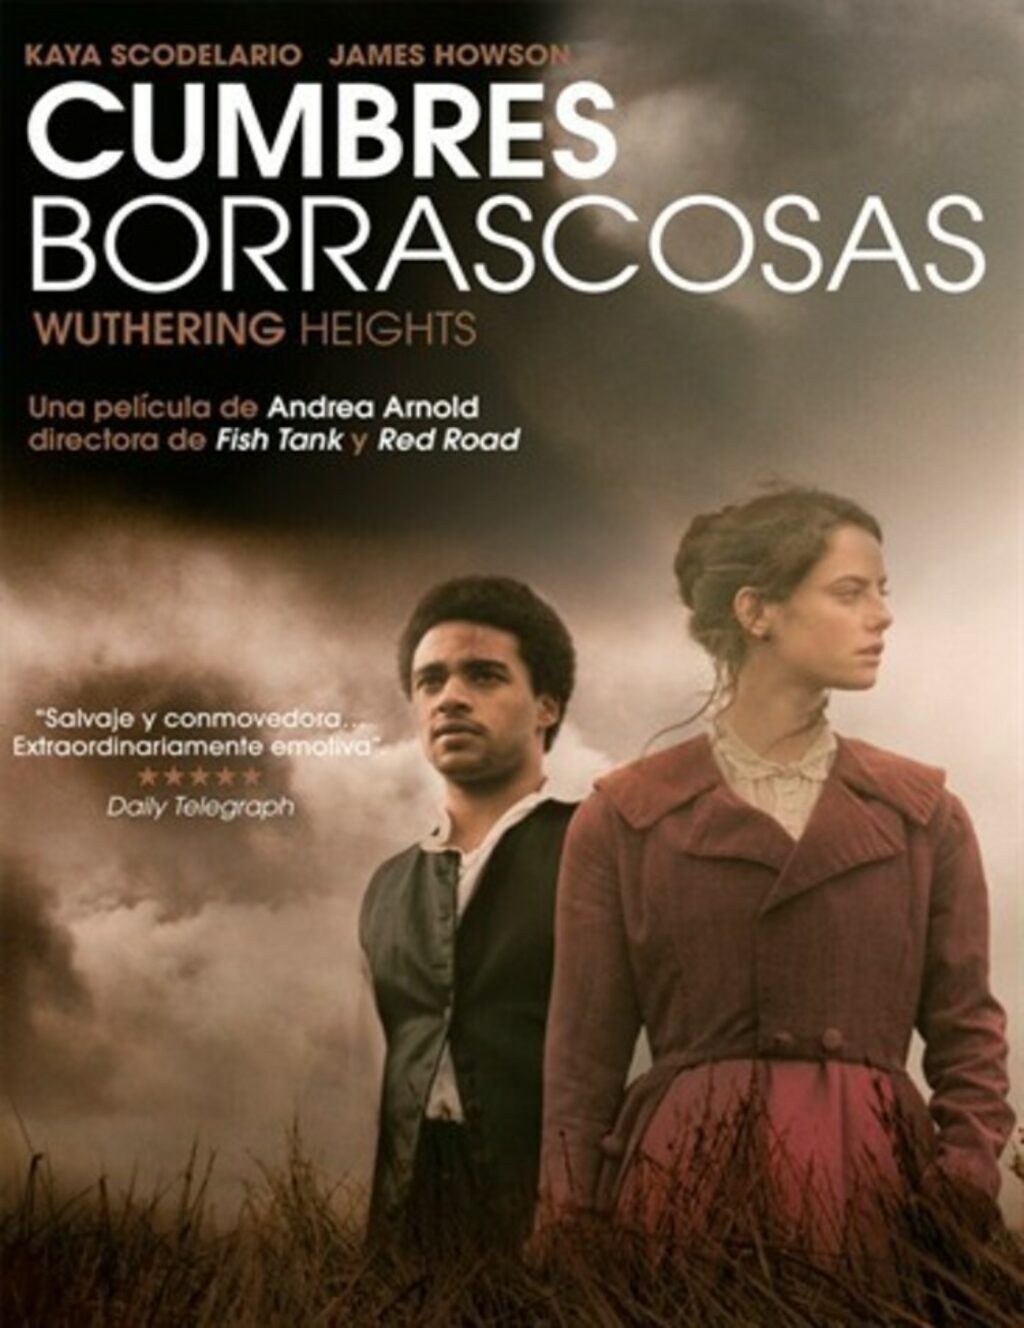 Cartel de la película "Cumbres Borrascosas", dirigida por Andrea Arnold. 